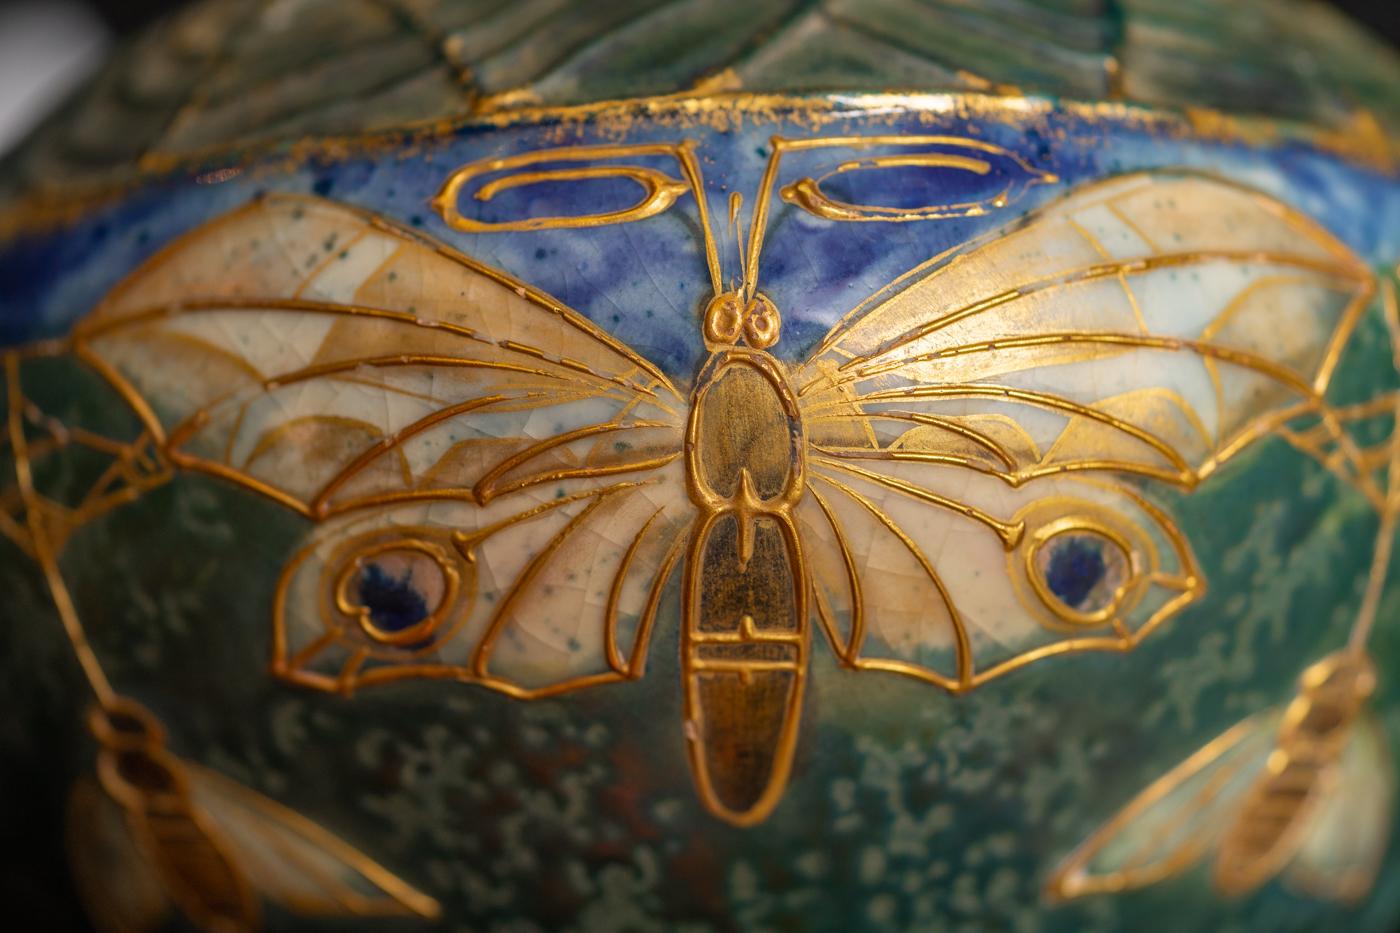 Gres Bijou series Butterflies & Spiderwebs Vase by Reissner & Kessel for Amphora 2